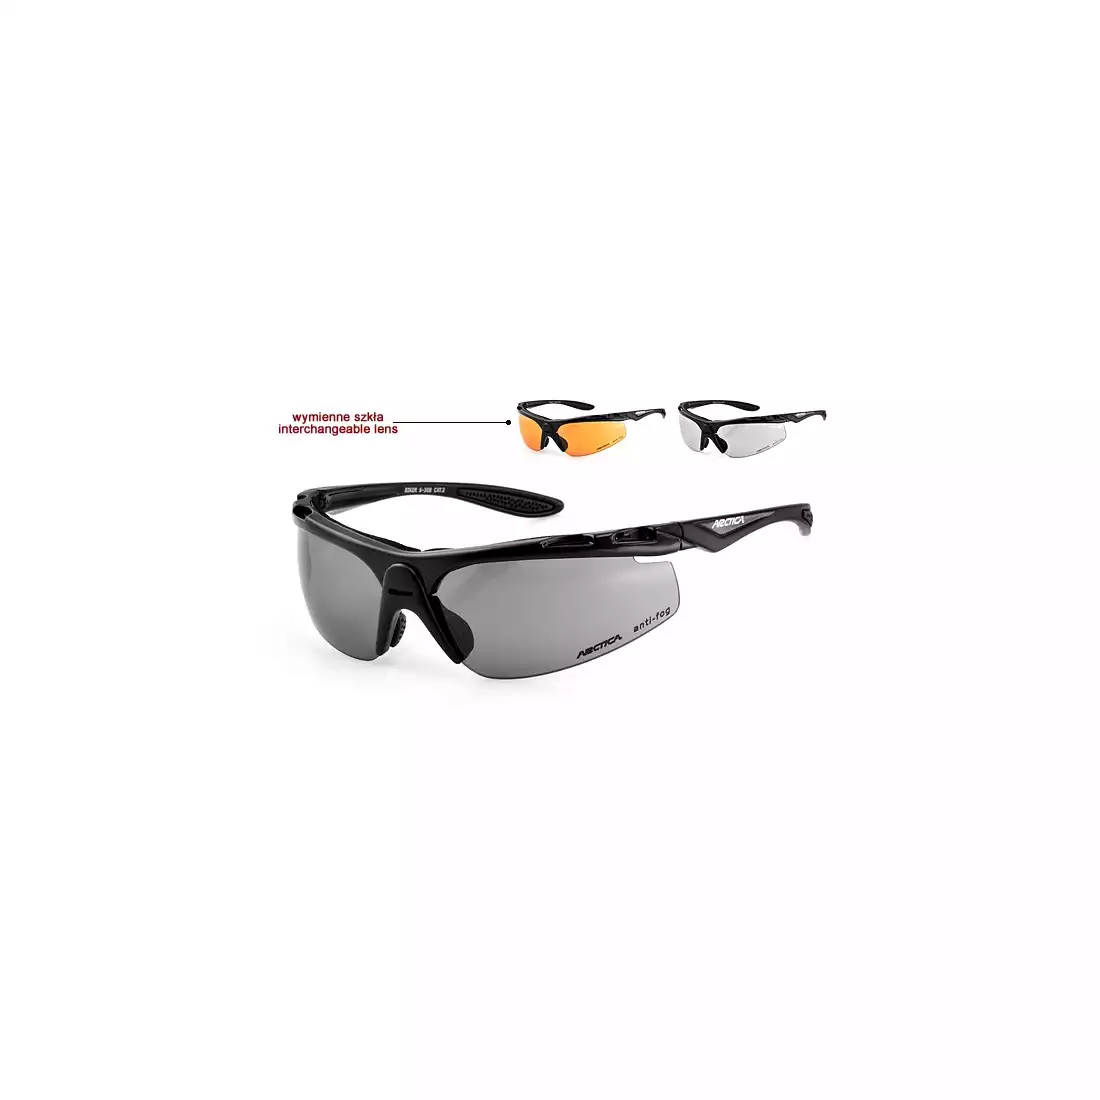 ARCTICA okulary sportowe S-30 B - kolor: Czarny